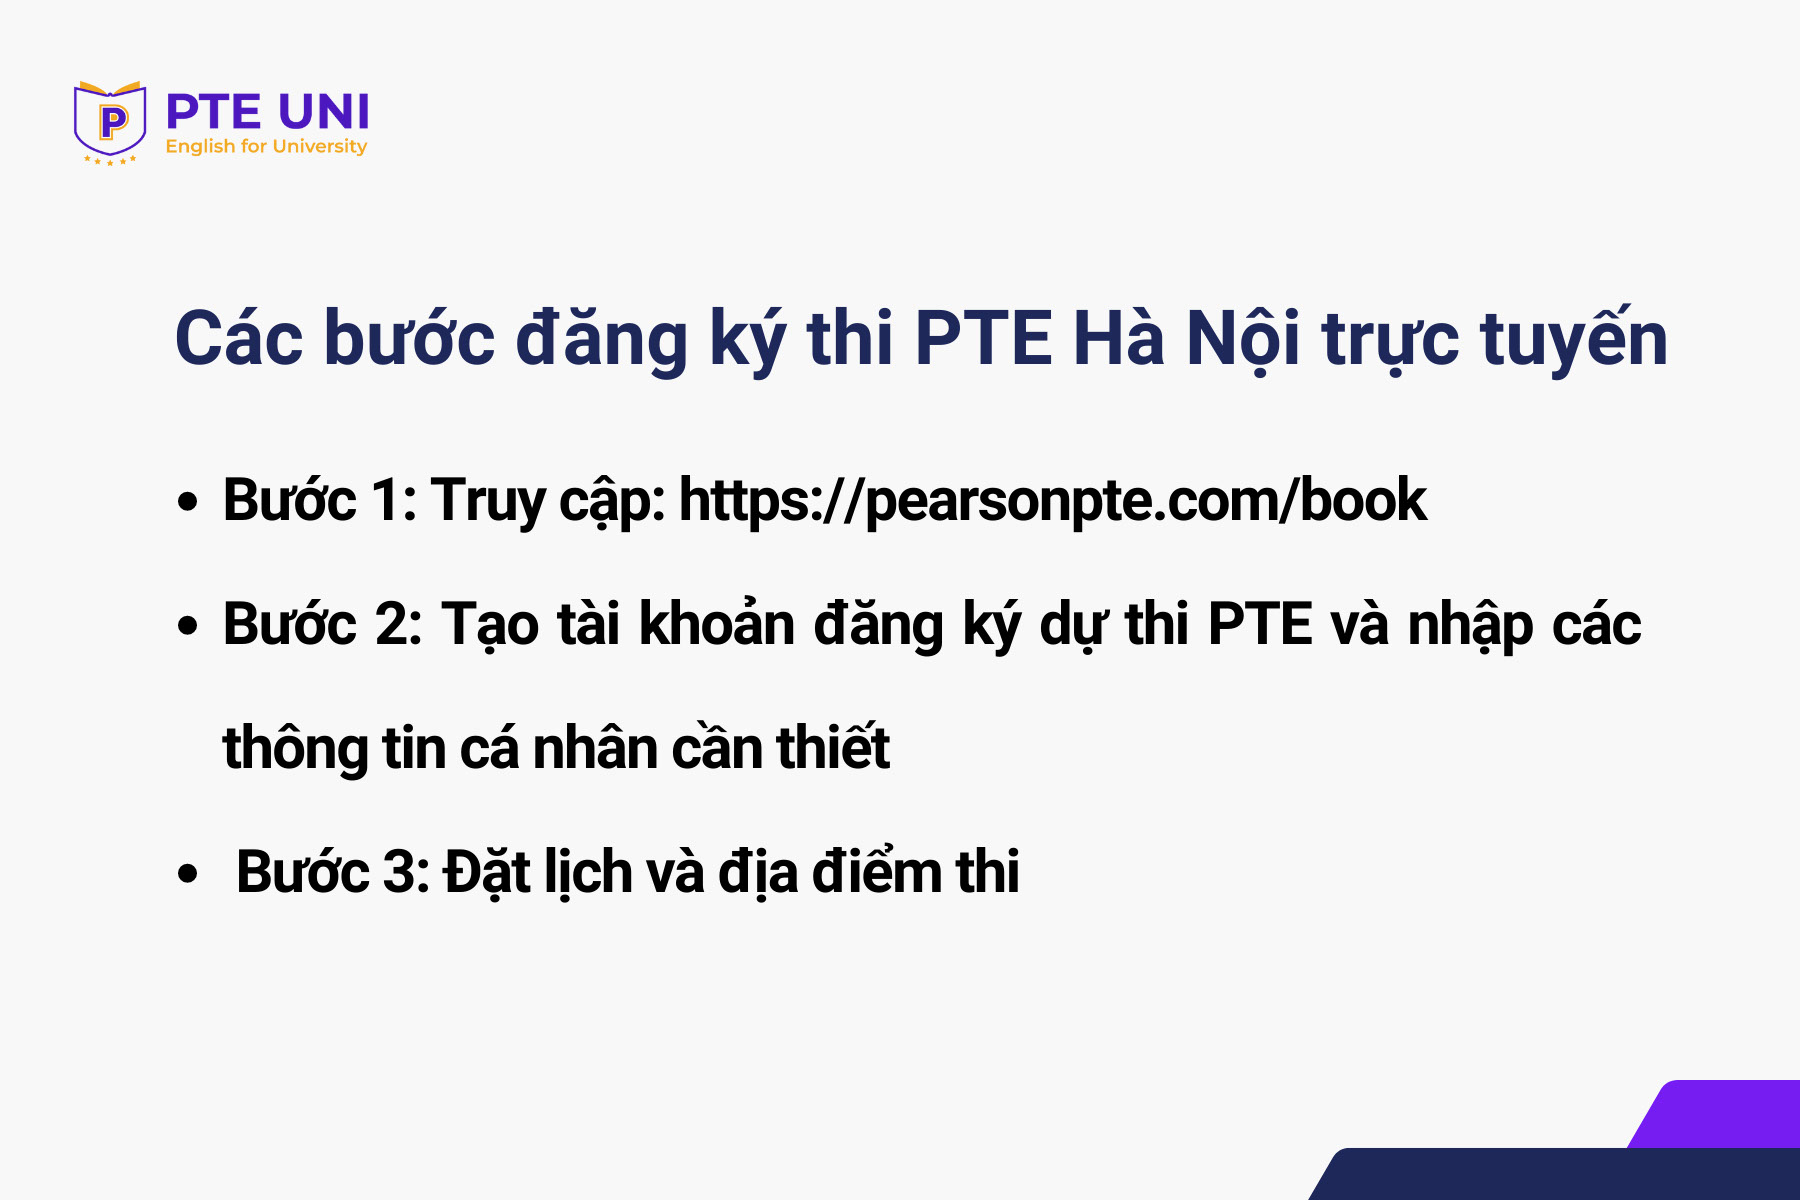 Đăng ký thi PTE Hà Nội trực tuyến